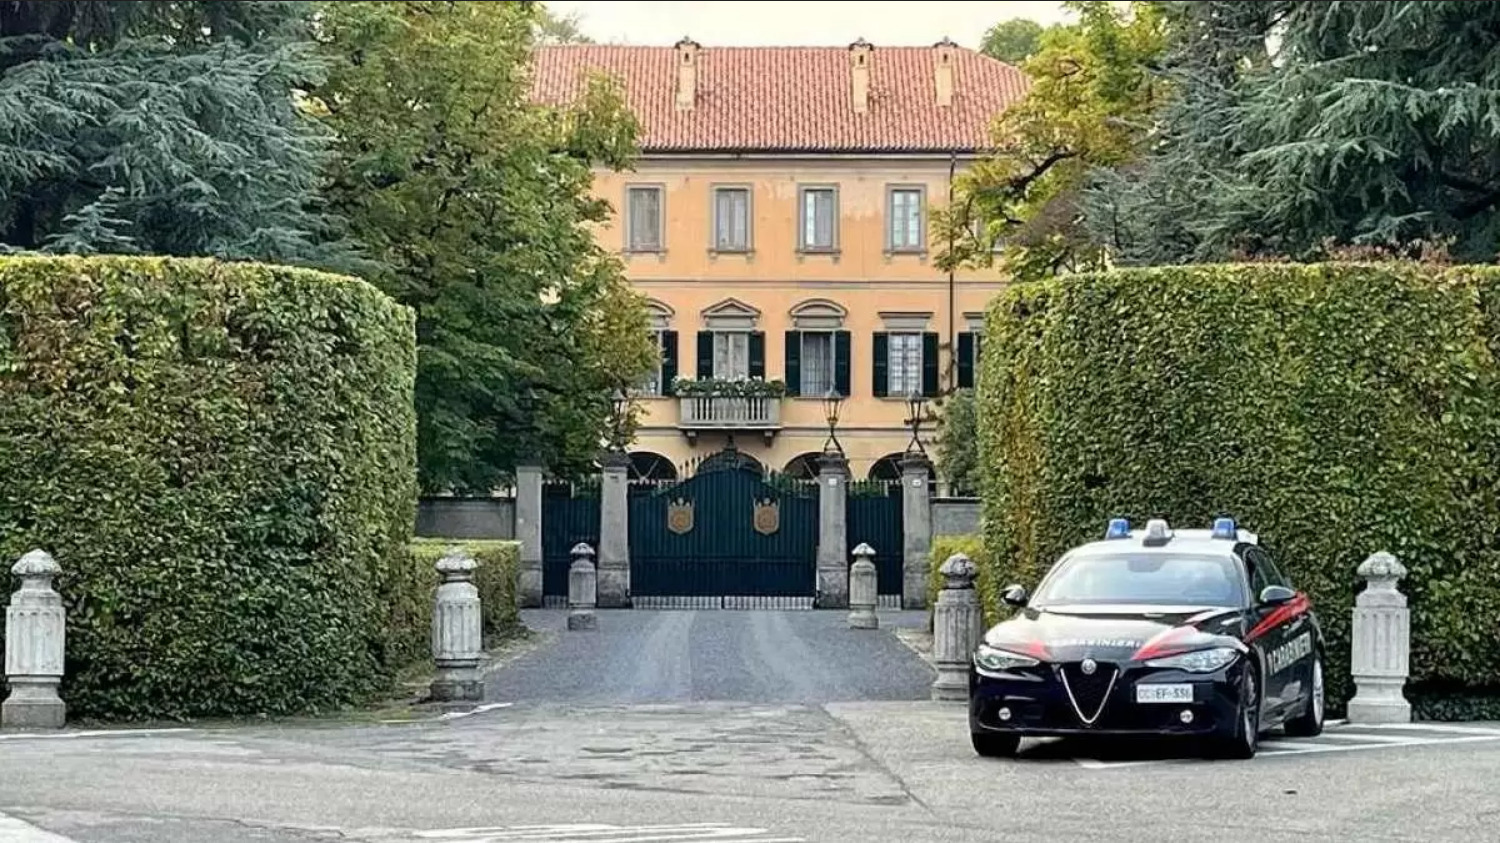 Итальянскую виллу Сильвио Берлускони хотят превратить в музей. Вот как она выглядит